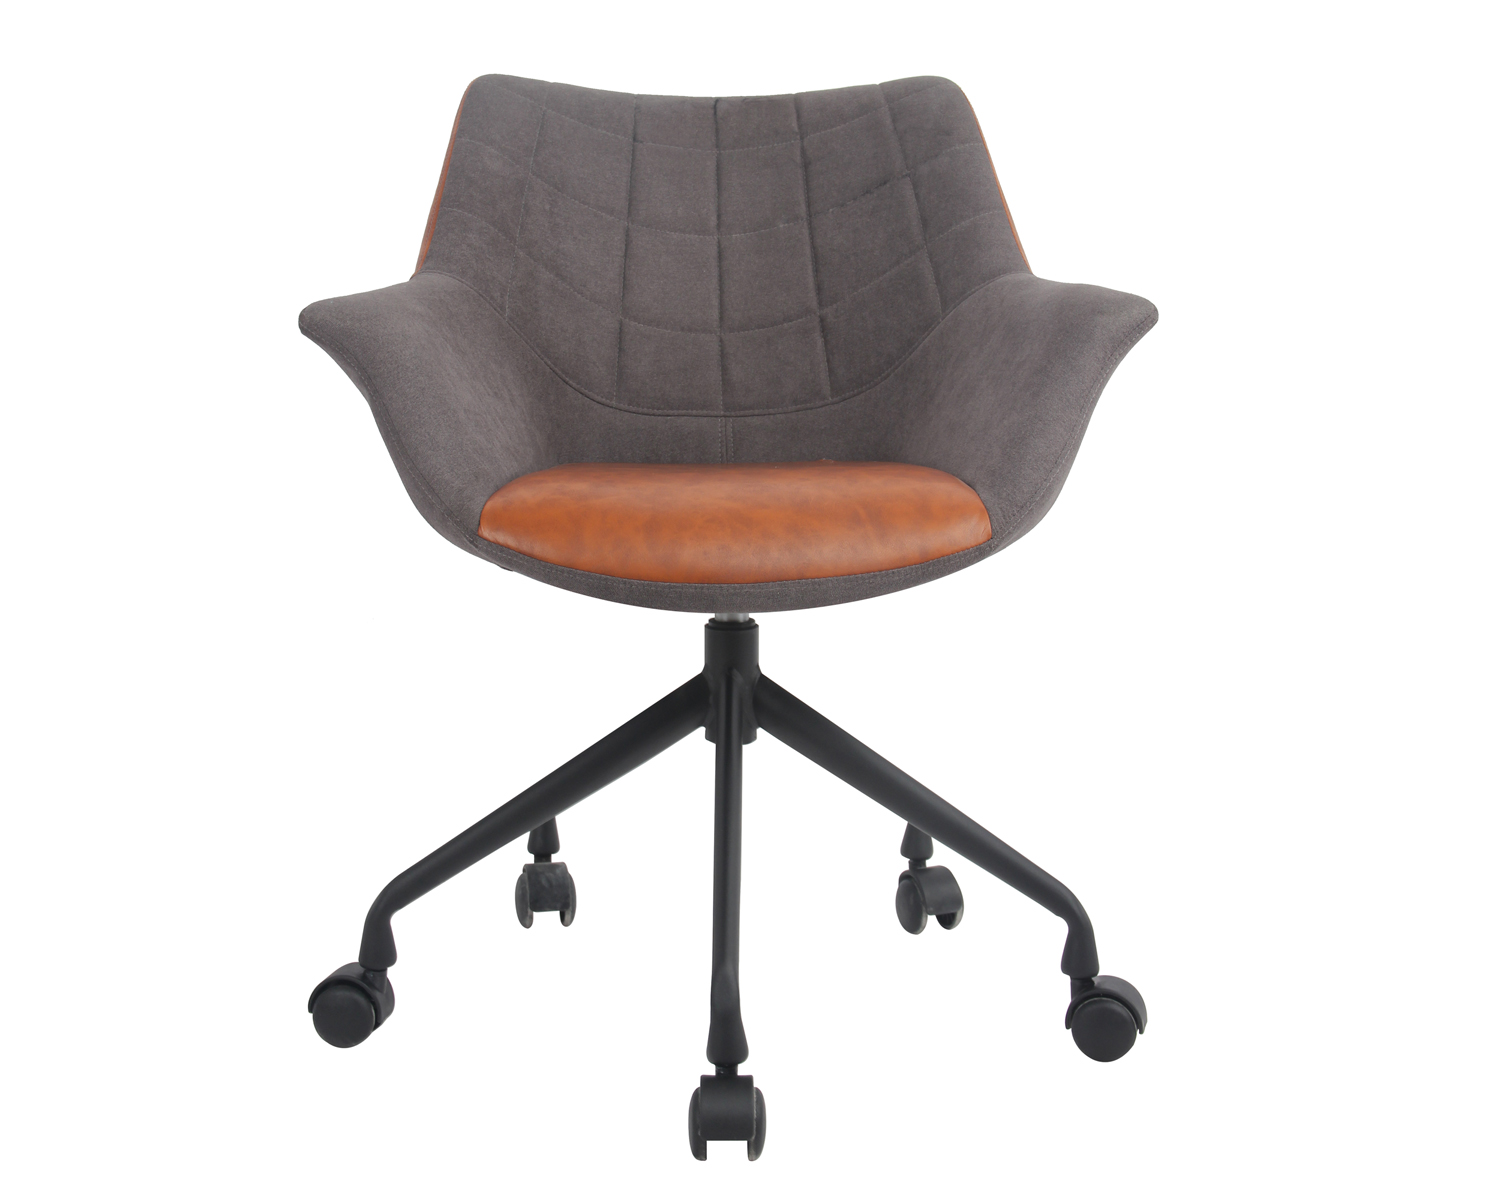 Home-Office-Stuhl mit gutem Schaumstoff, höhenverstellbarer Schreibtisch-Akzentstuhl mit mattschwarzer Stahlbasis, Twill-Stoff, hellgrau. Ausgewähltes Bild